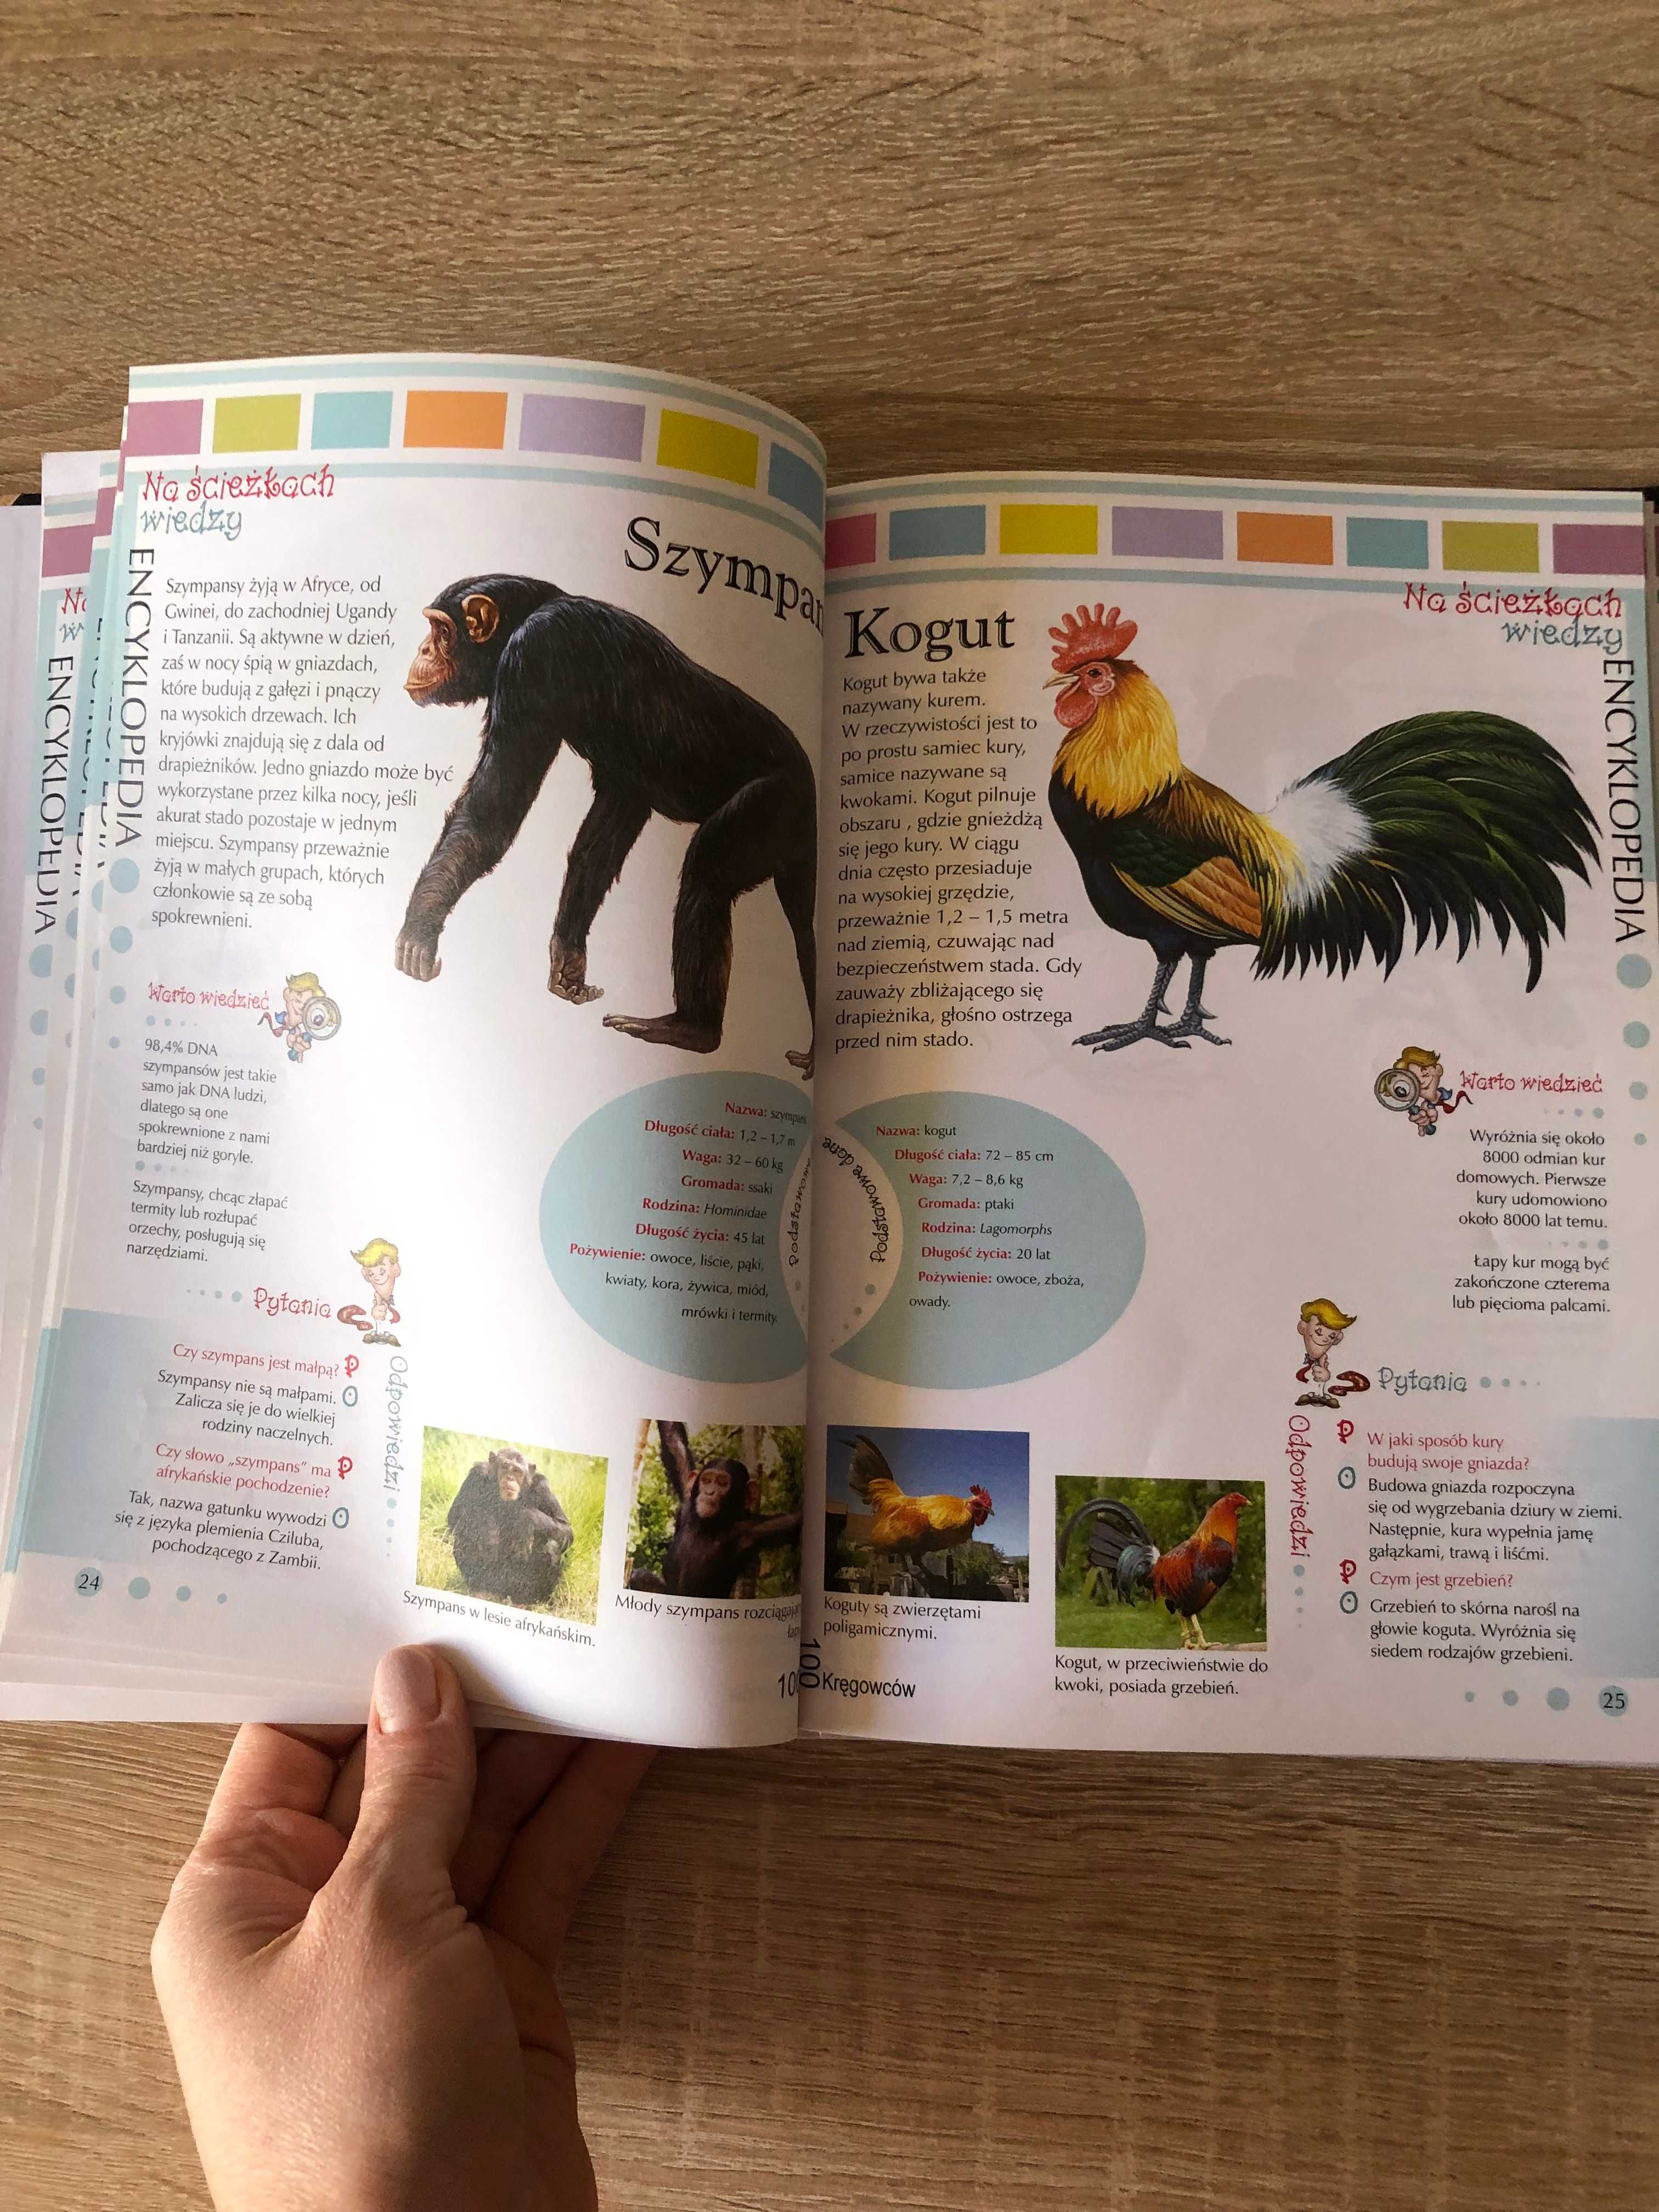 Książka / Encyklopedia o zwierzętach, ptakach itp.